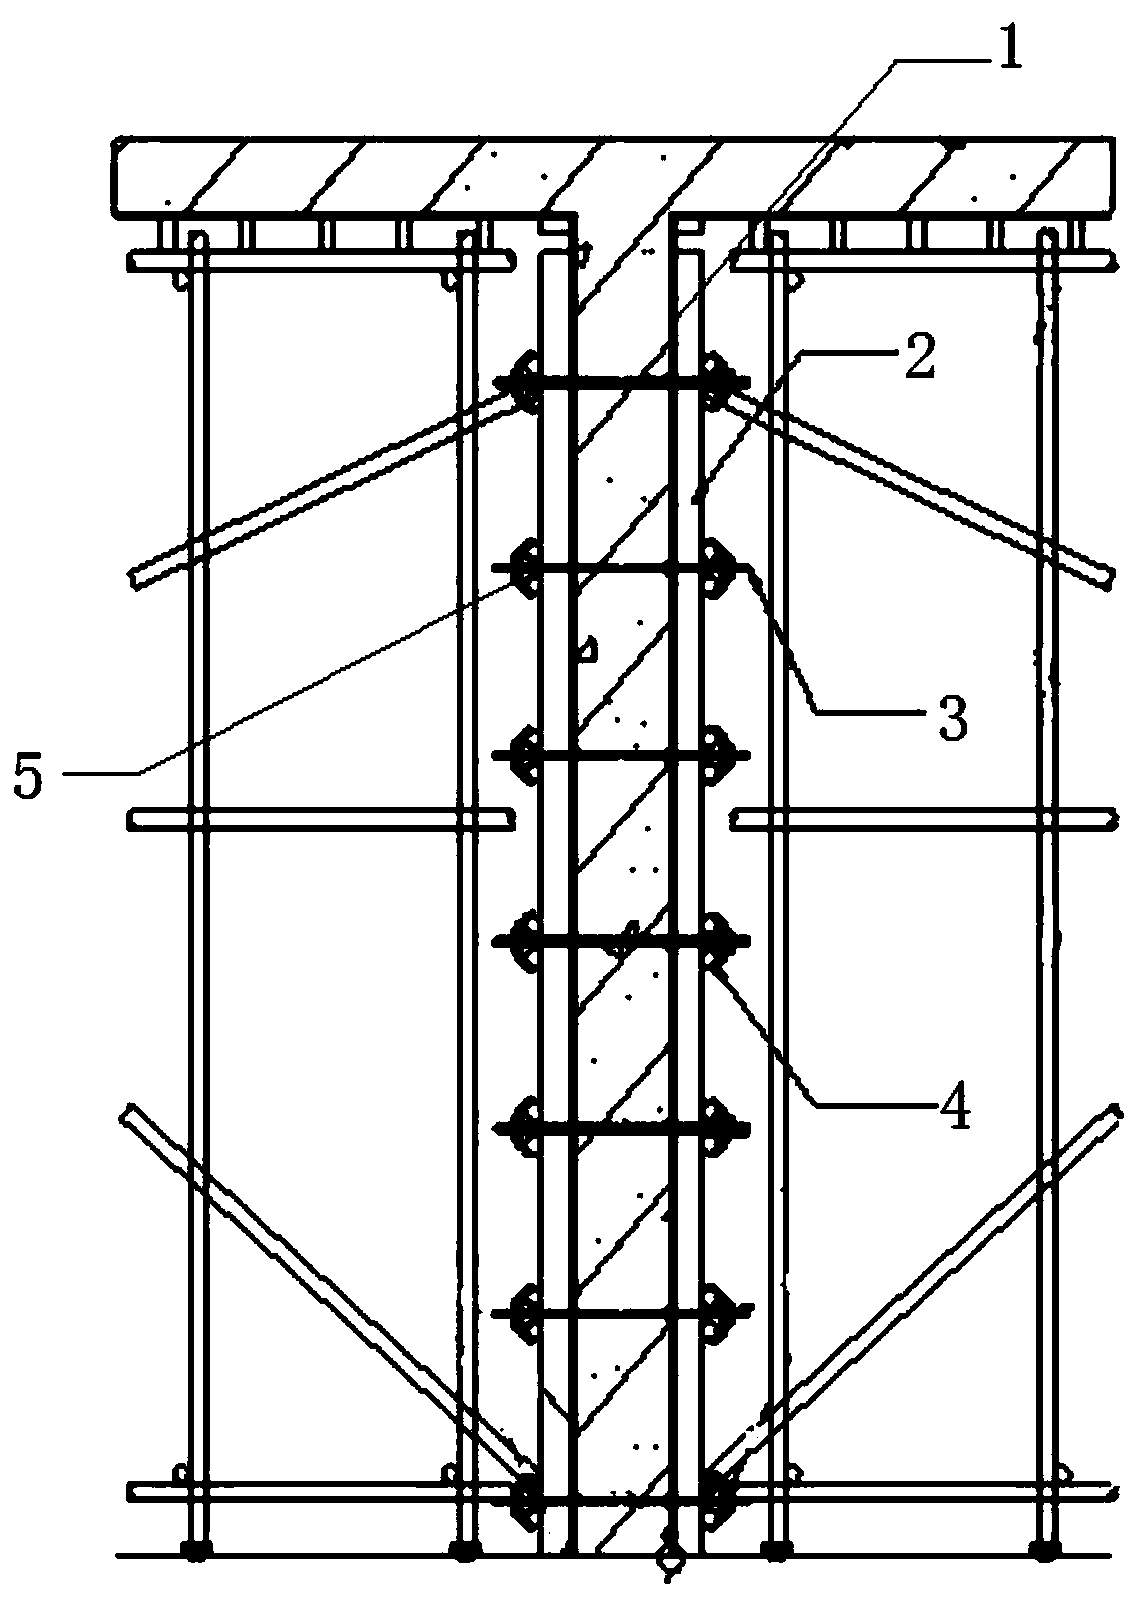 A formwork erecting method of a shear wall formwork system